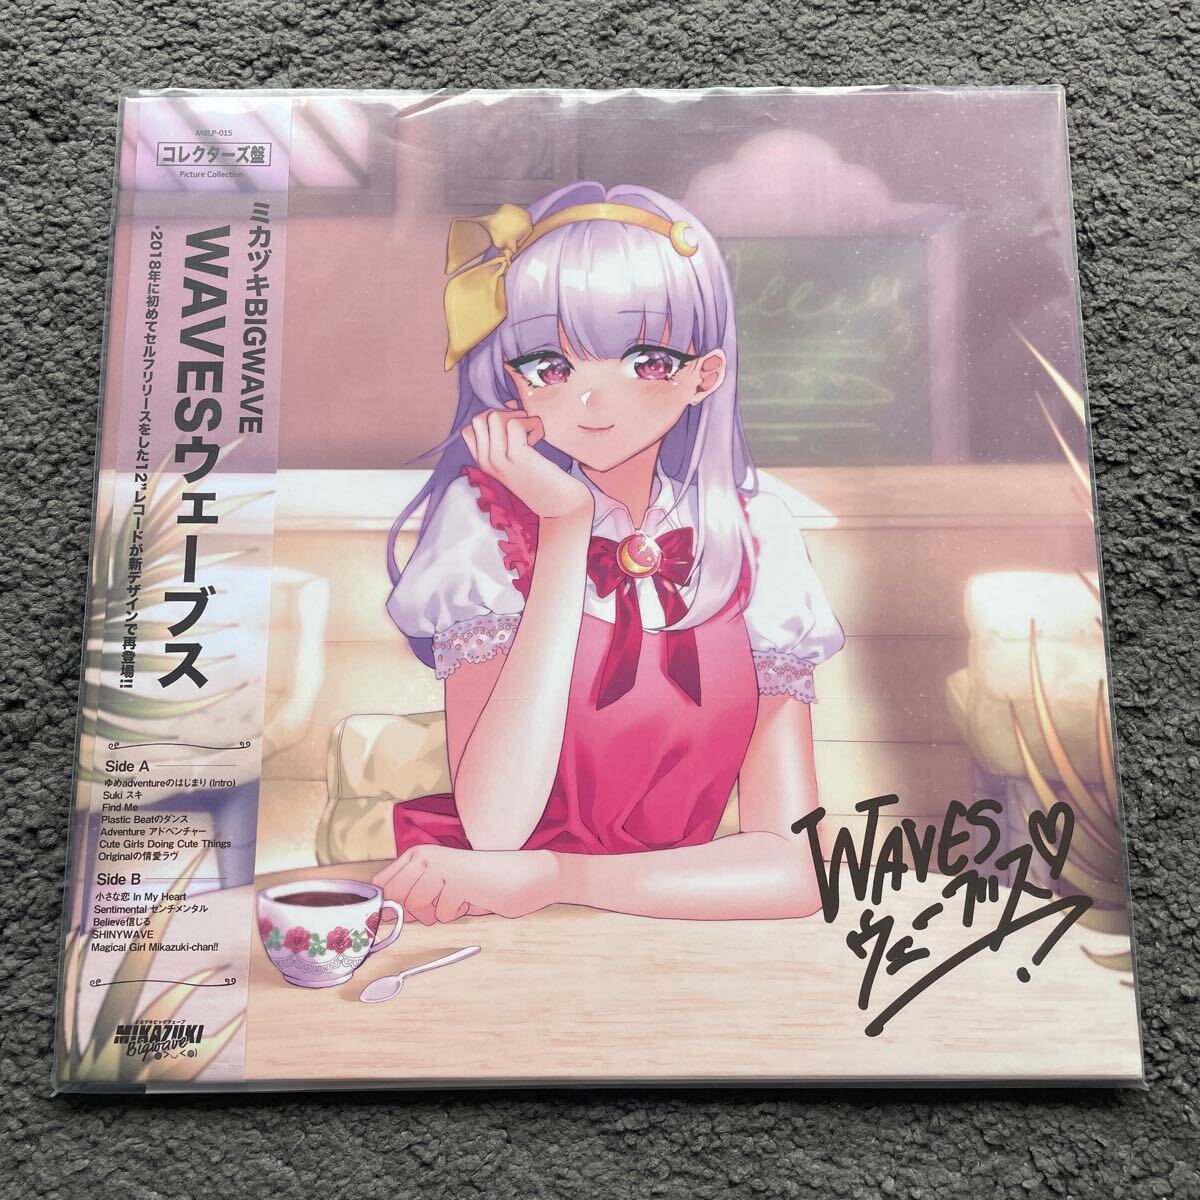 コレクターズ盤 ミカヅキBIGWAVE WAVES ピクチャー盤 アナログ レコード LP 12